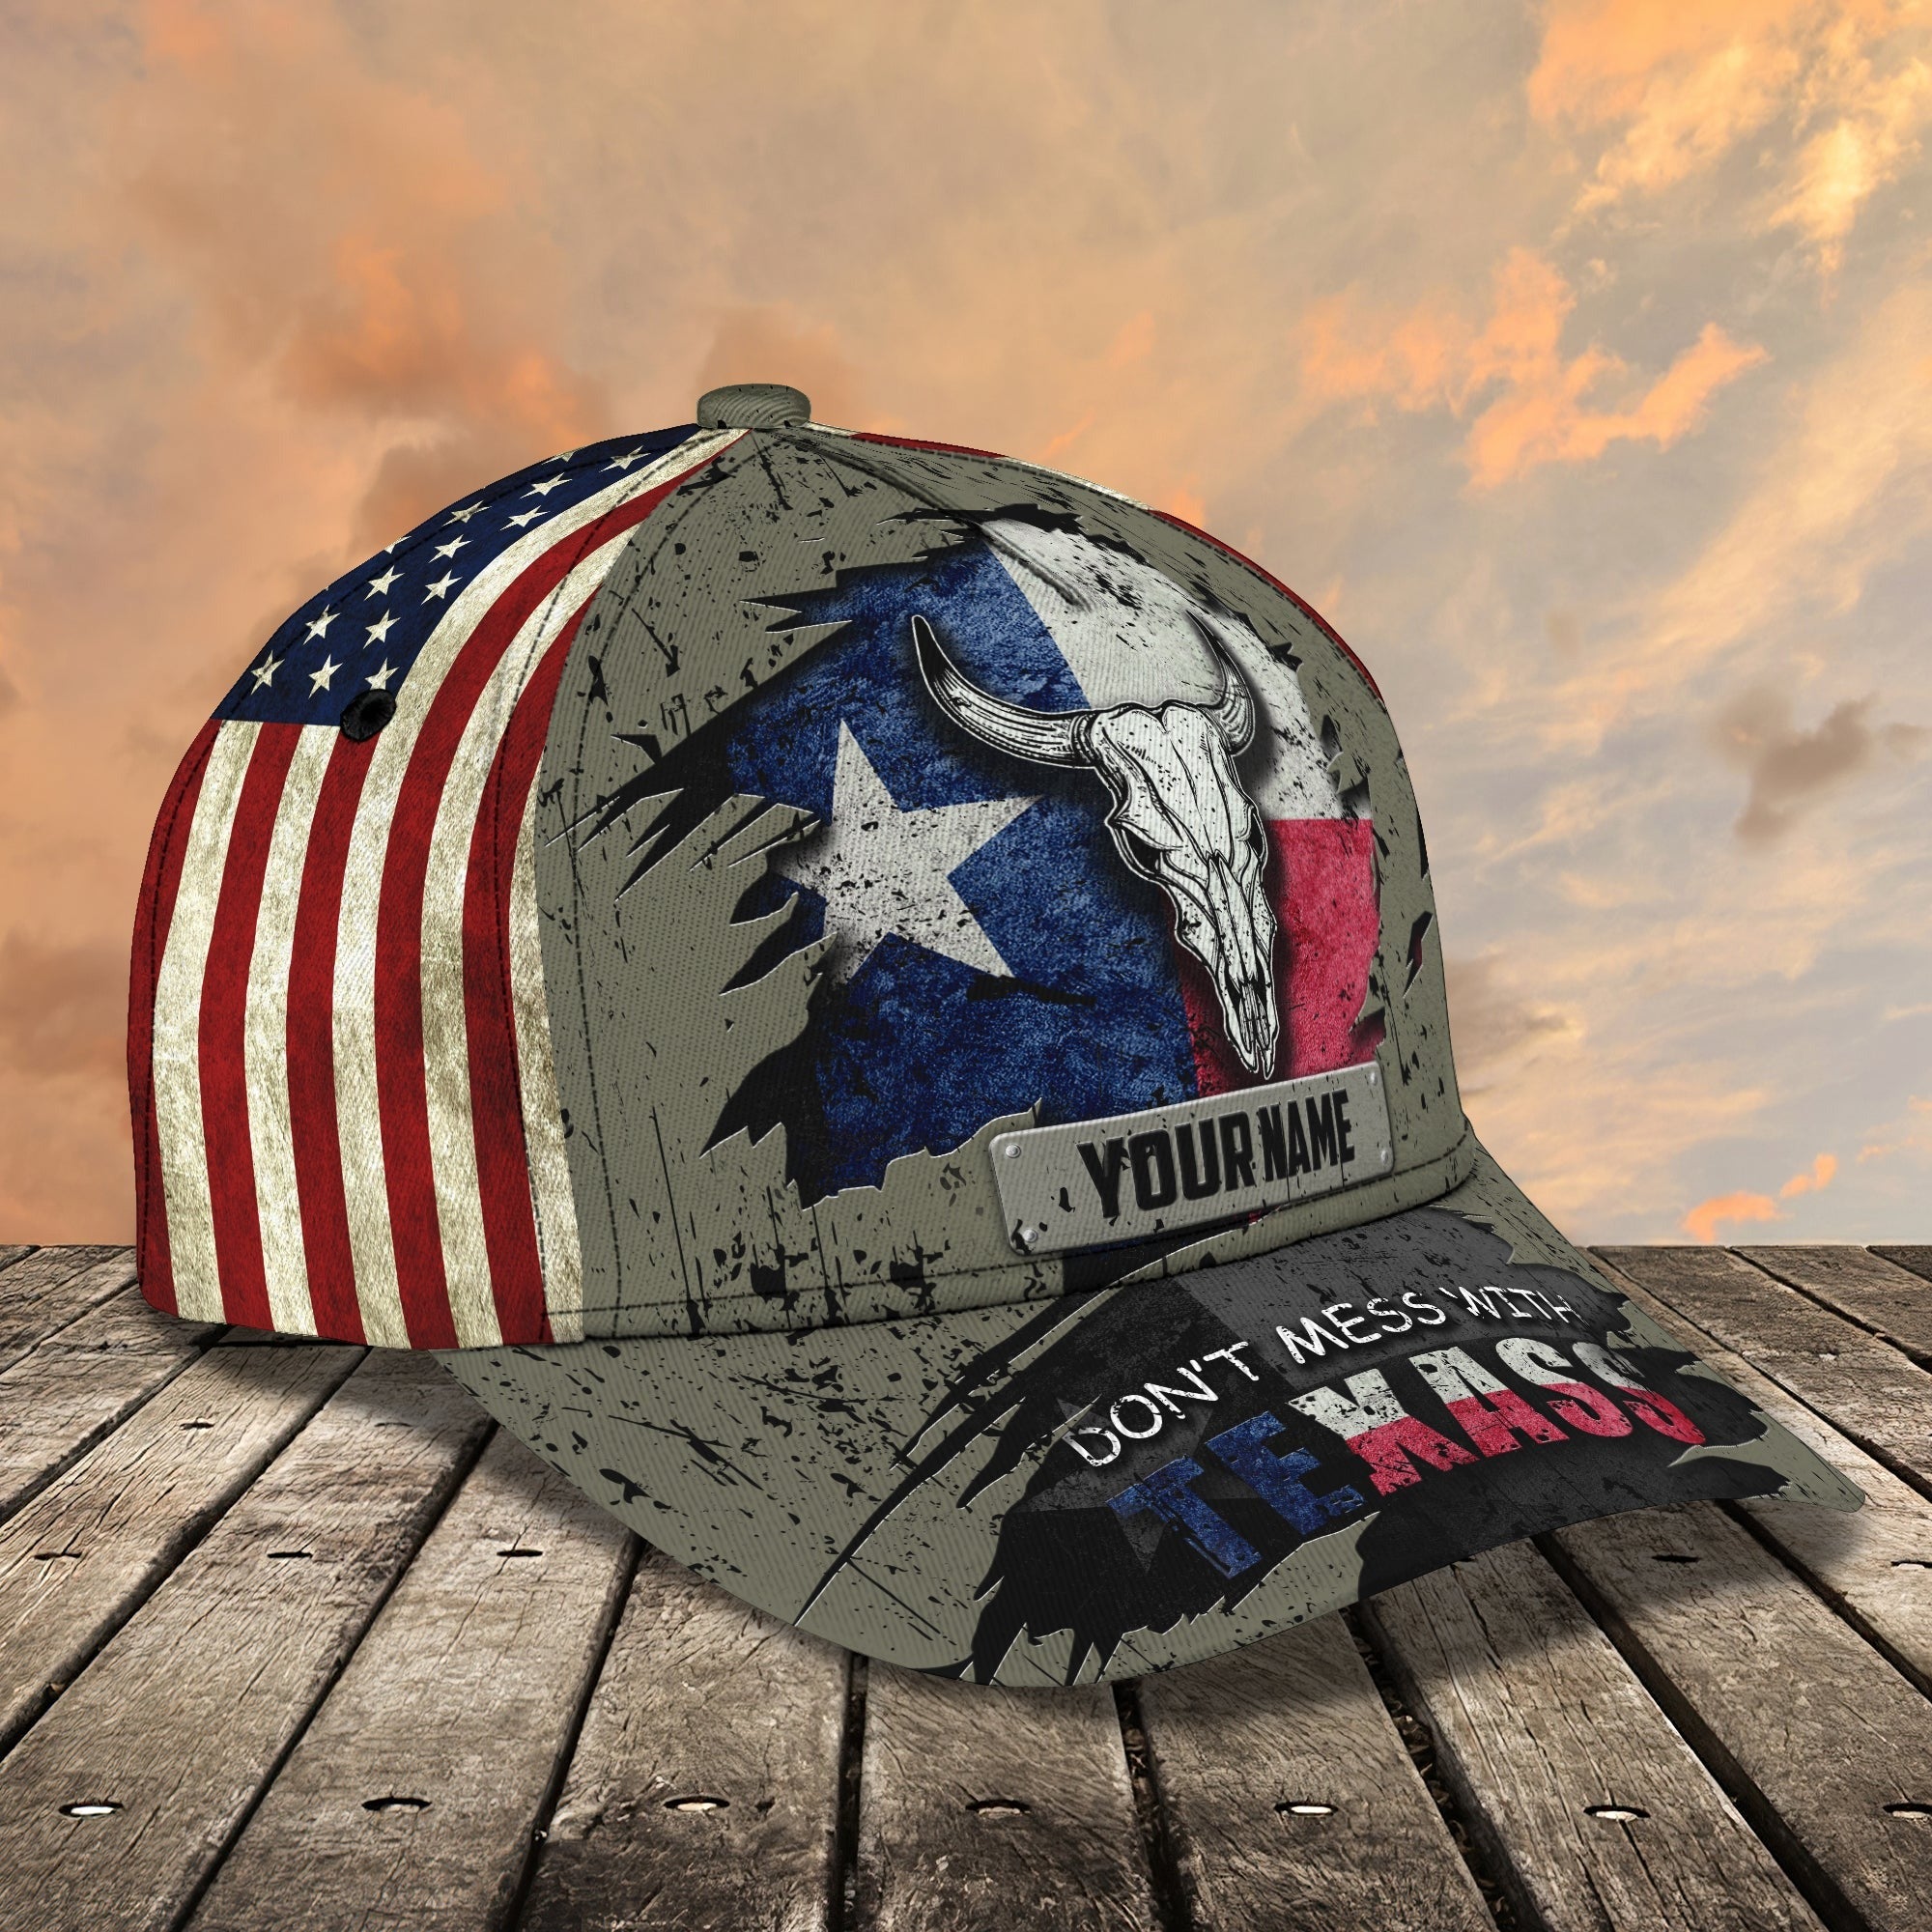 Personalized 3D Classic Cap Dont Mess With Texas/ Texas 3D Baseball Cap/ Texas Cap Hats